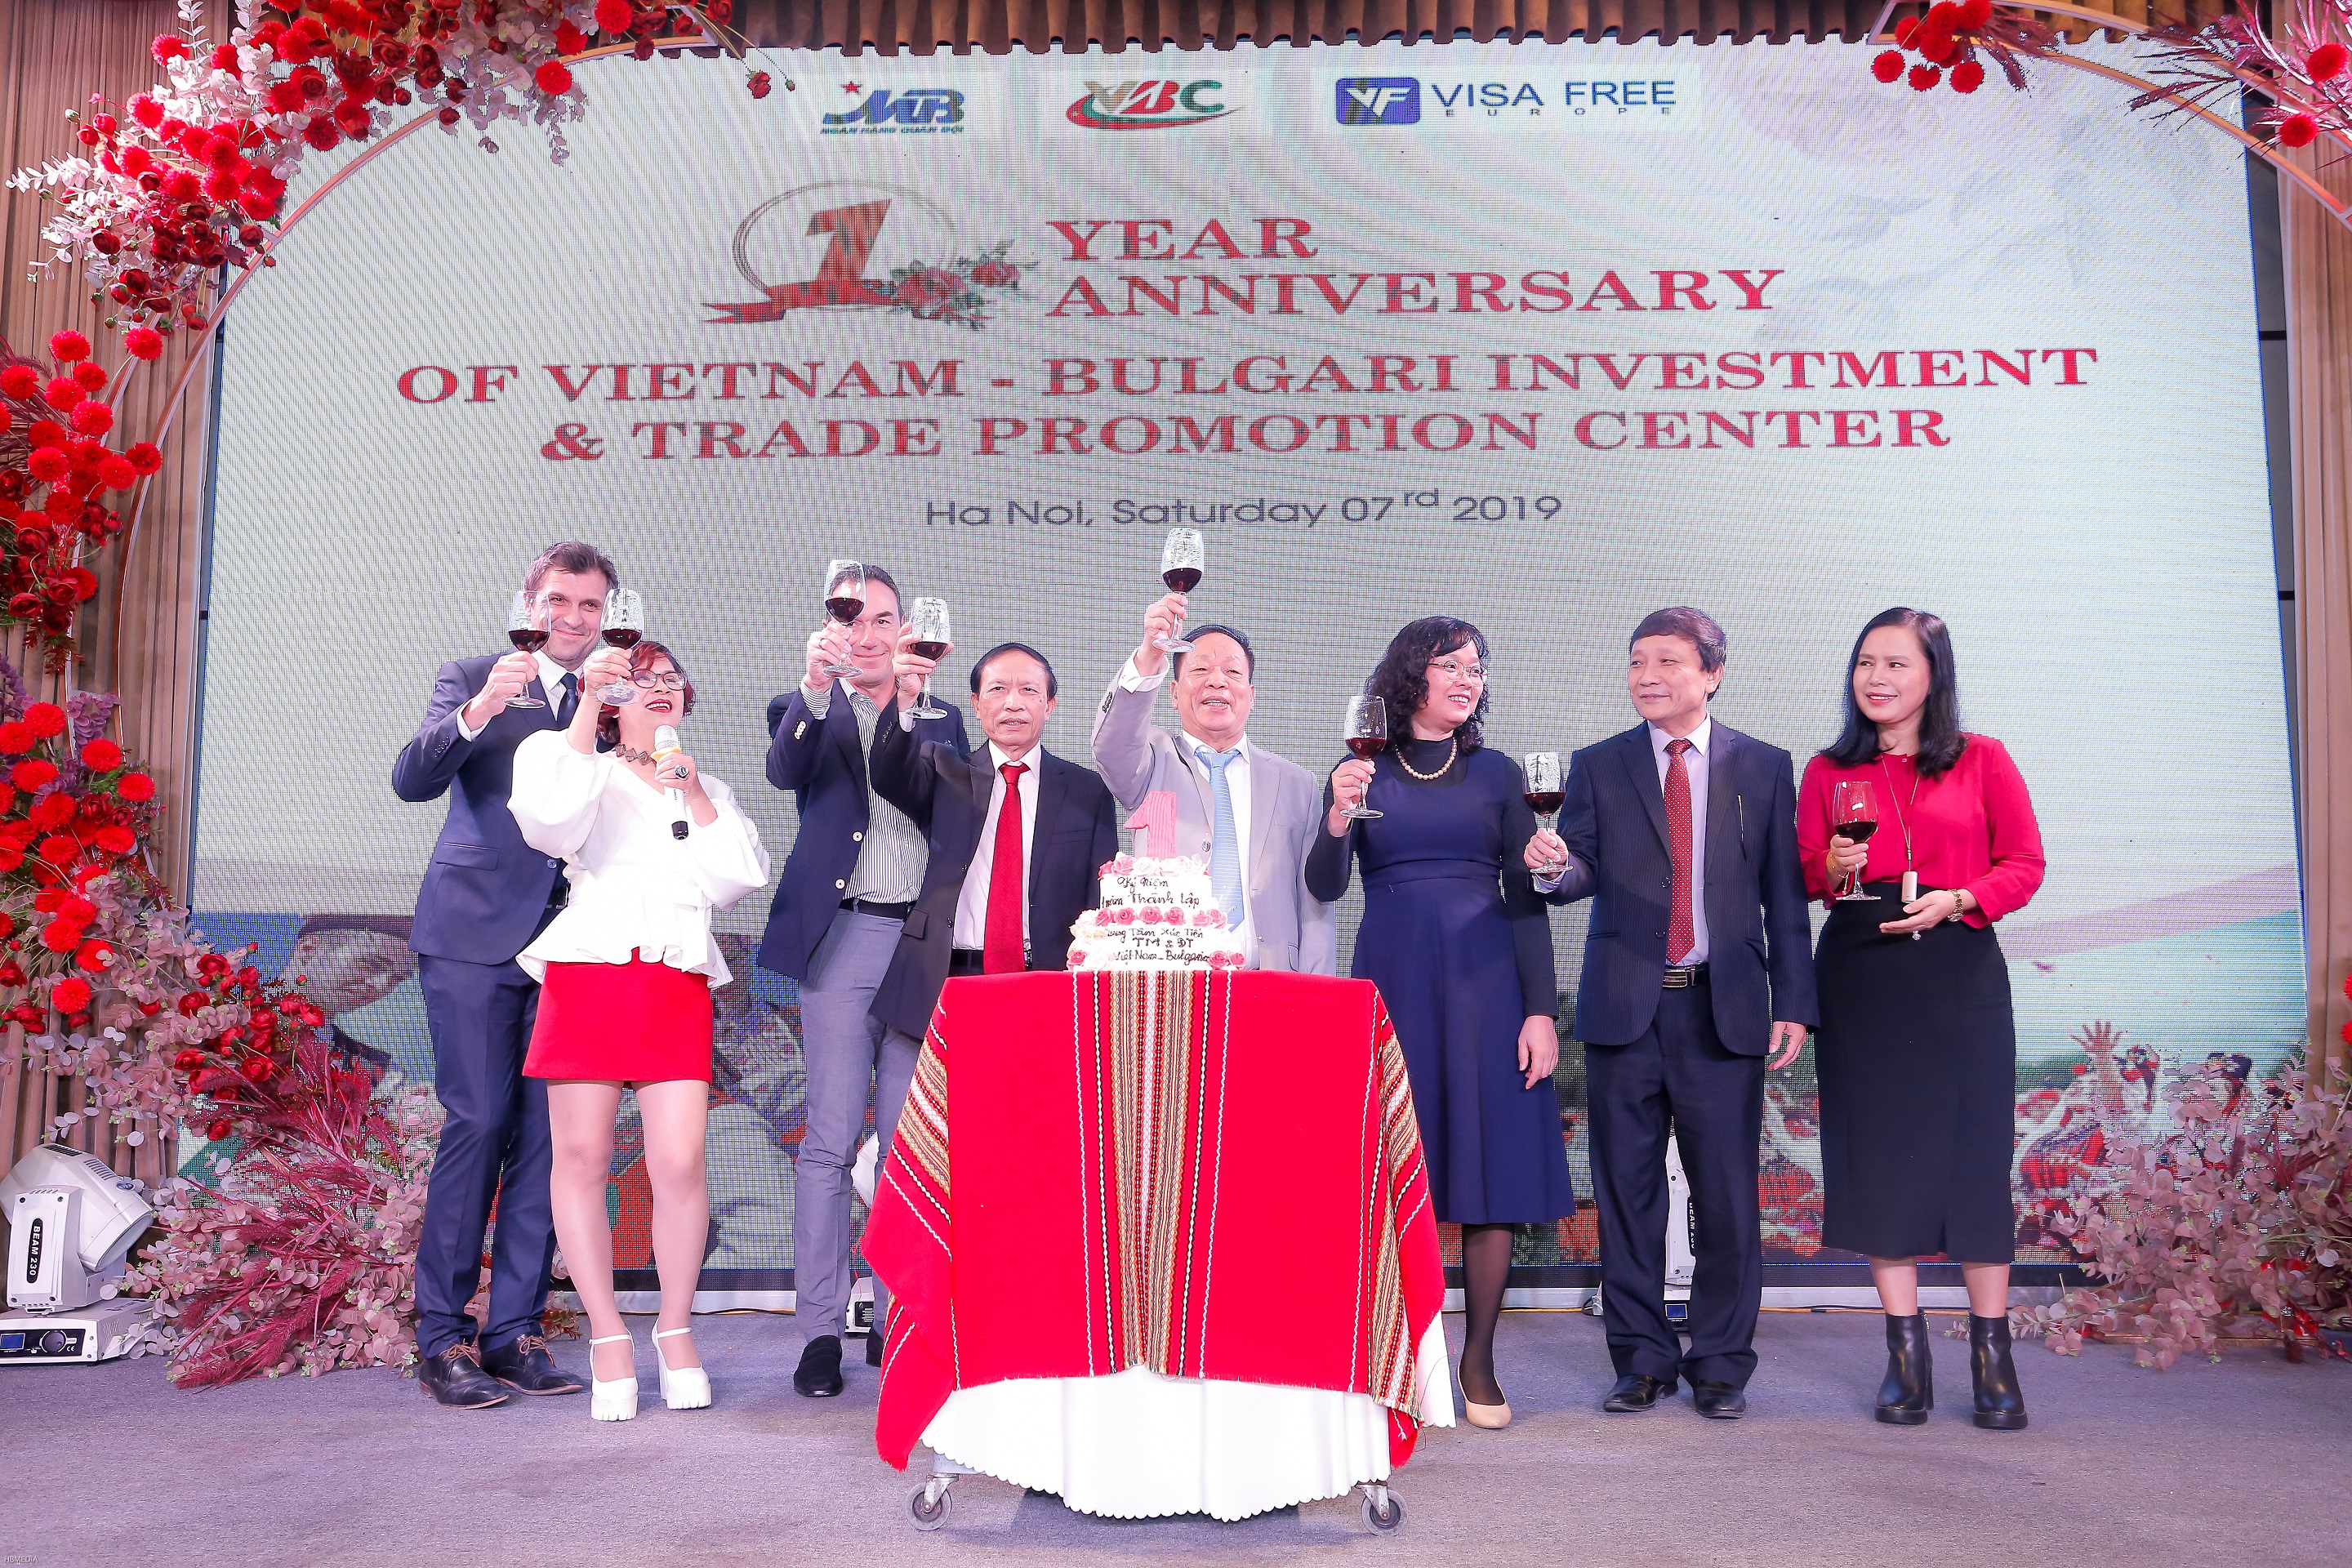 Lễ kỷ niệm 1 năm thành lập Trung tâm Xúc tiến Thương mại & Đầu tư Việt Nam - Bulgaria